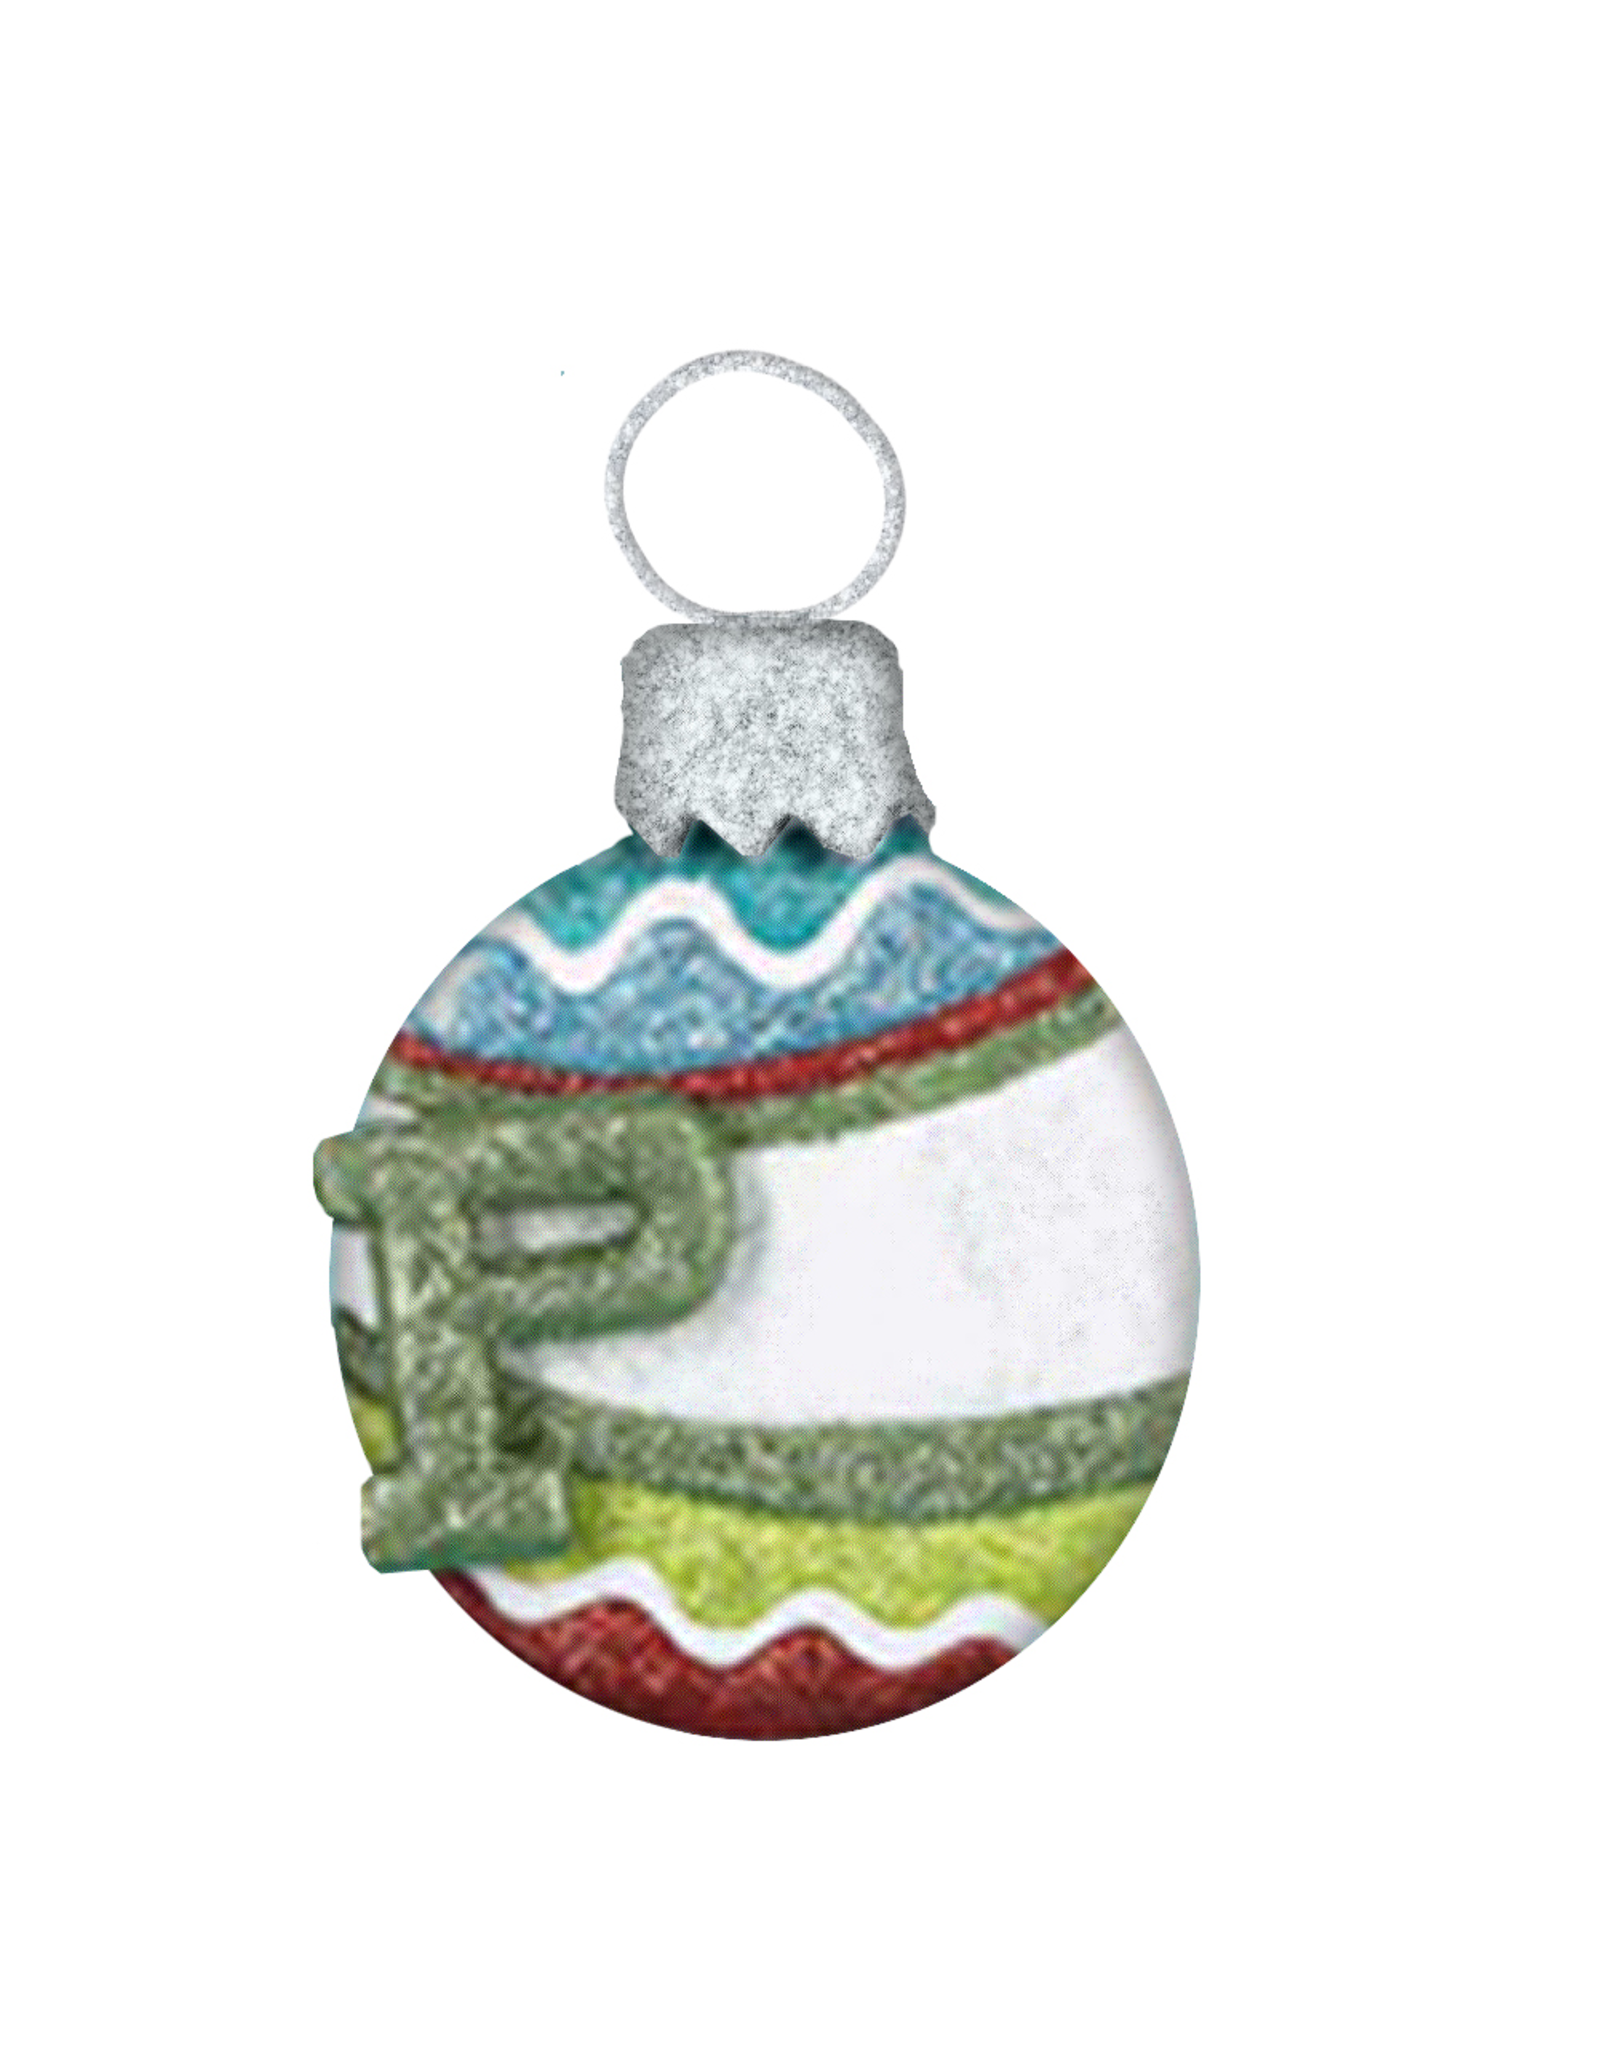 Kurt Adler Mulit Color Glitter Ball Ornament w Letter Initial P